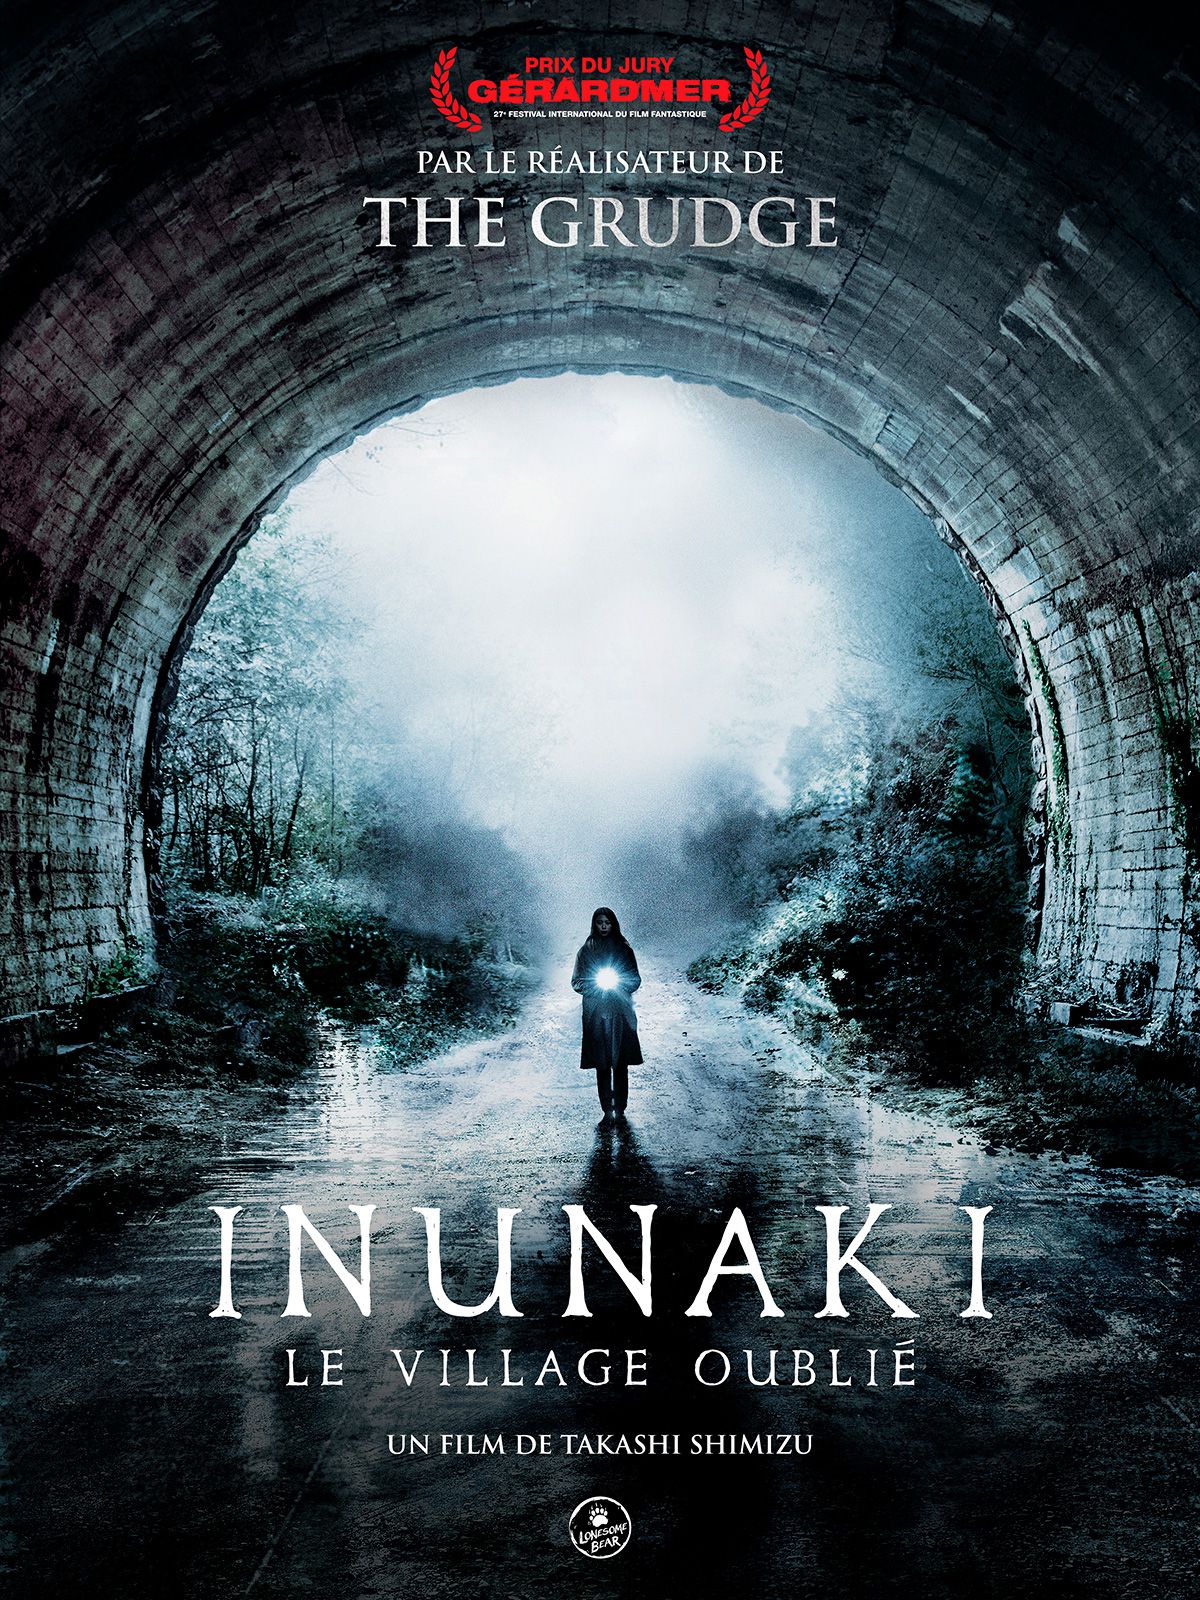 Inunaki : Le Village oublié - Film (2020) streaming VF gratuit complet